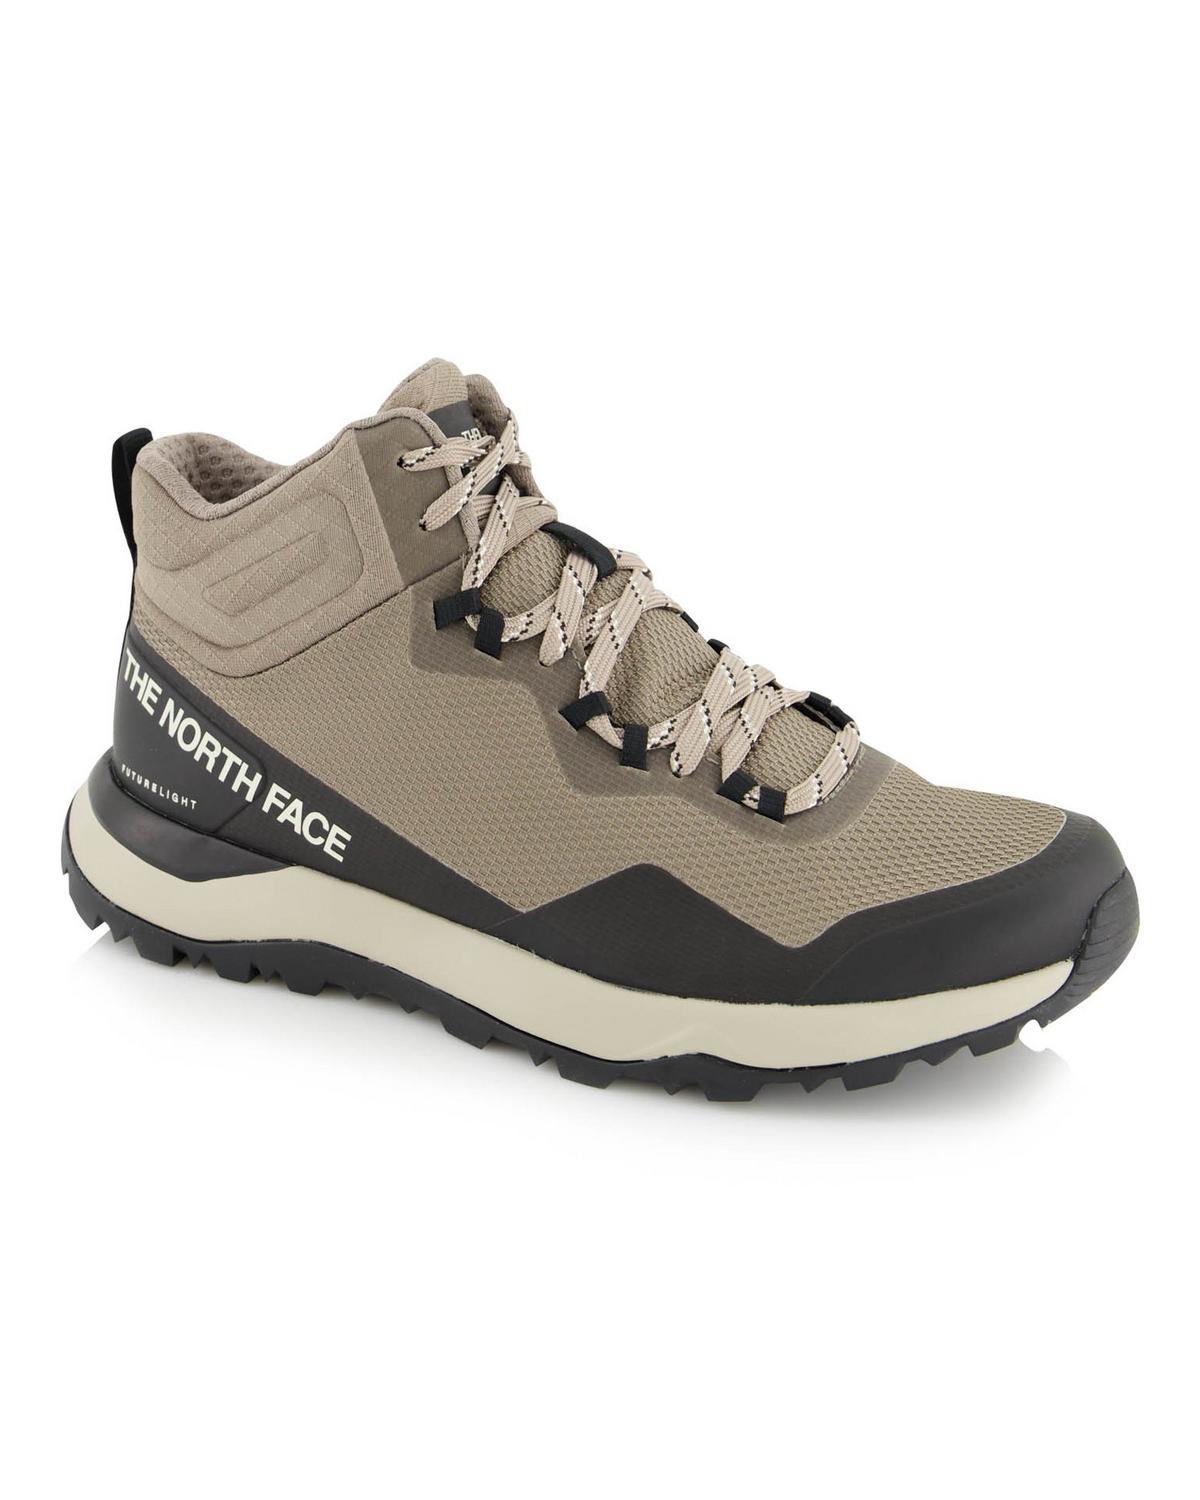 North Face Men’s Activist Mid FUTURELIGHT™ Hiking Boots -  Khaki